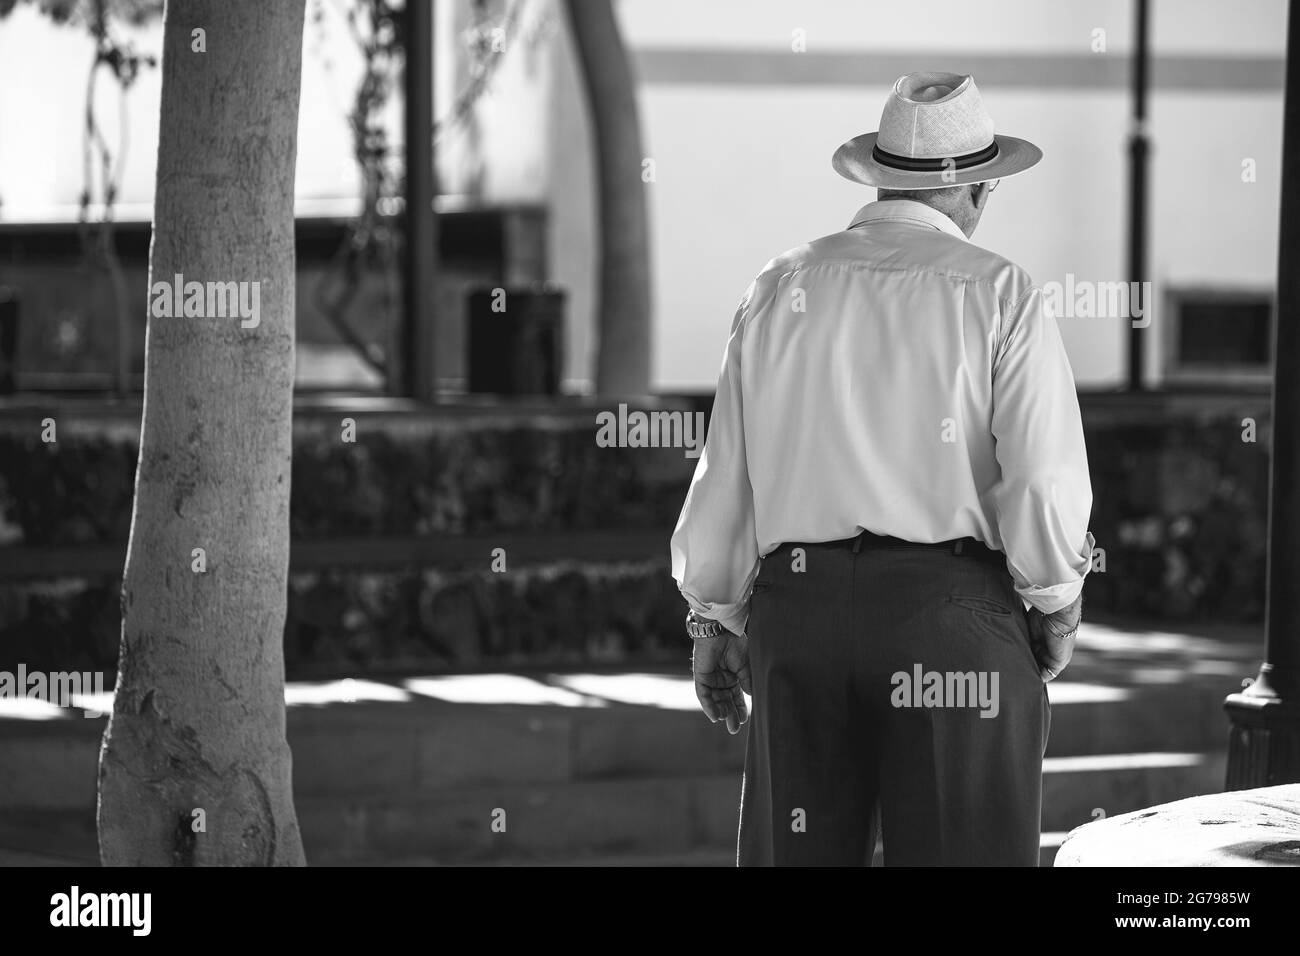 Mann mit Hut von hinten Stockfotografie - Alamy